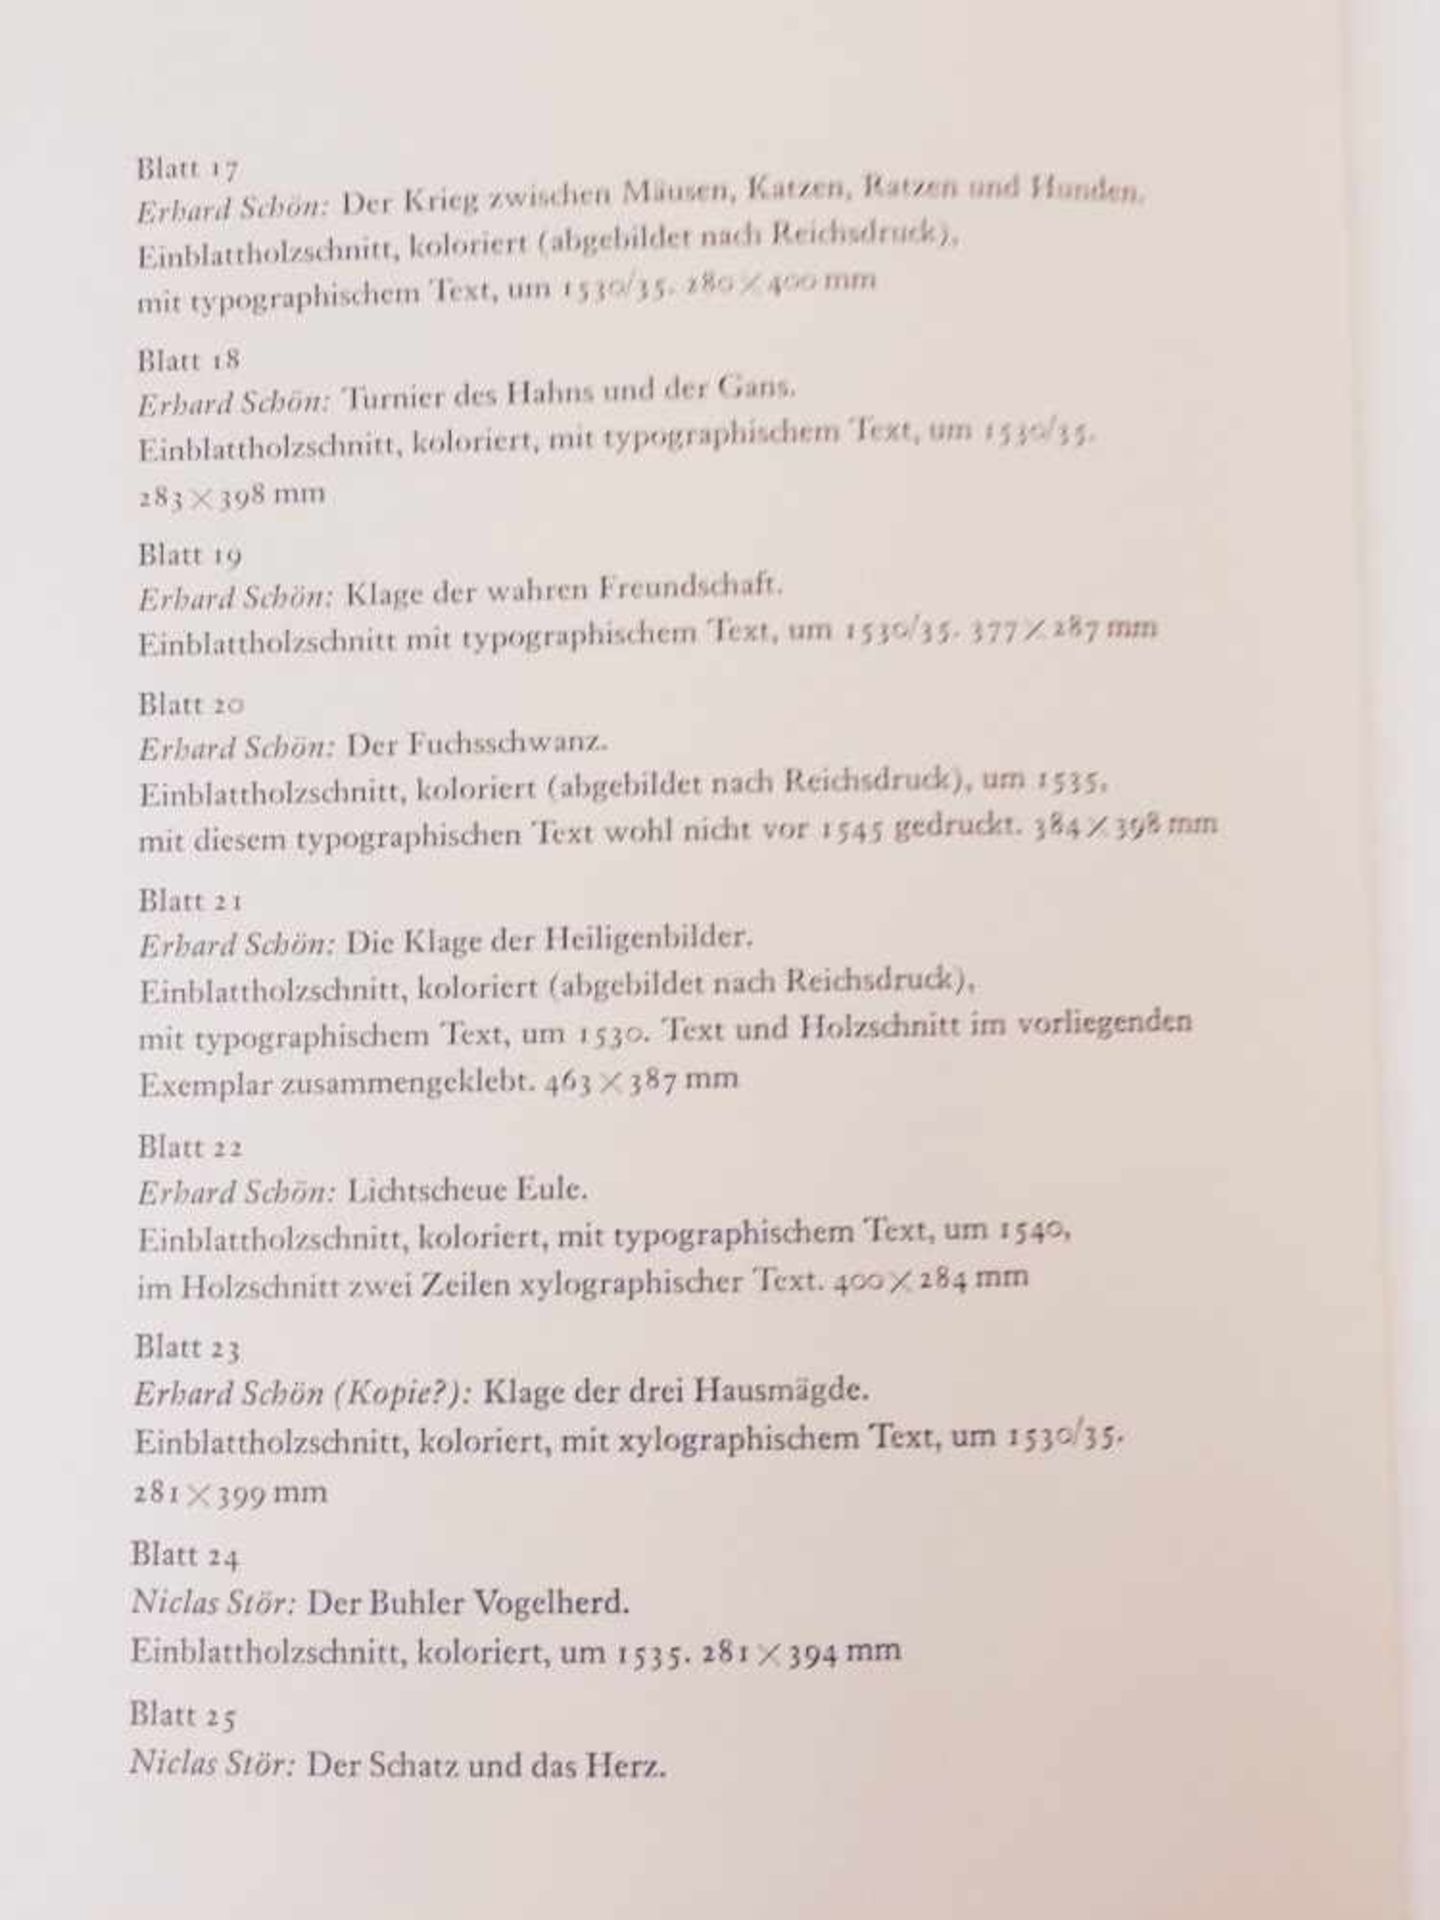 "FLUGBLÄTTER DER REFORMATION UND DES BAUERNKRIEGES", 50 teils kolorierte Blätter in Mappe,DDR 1975 - Bild 4 aus 8